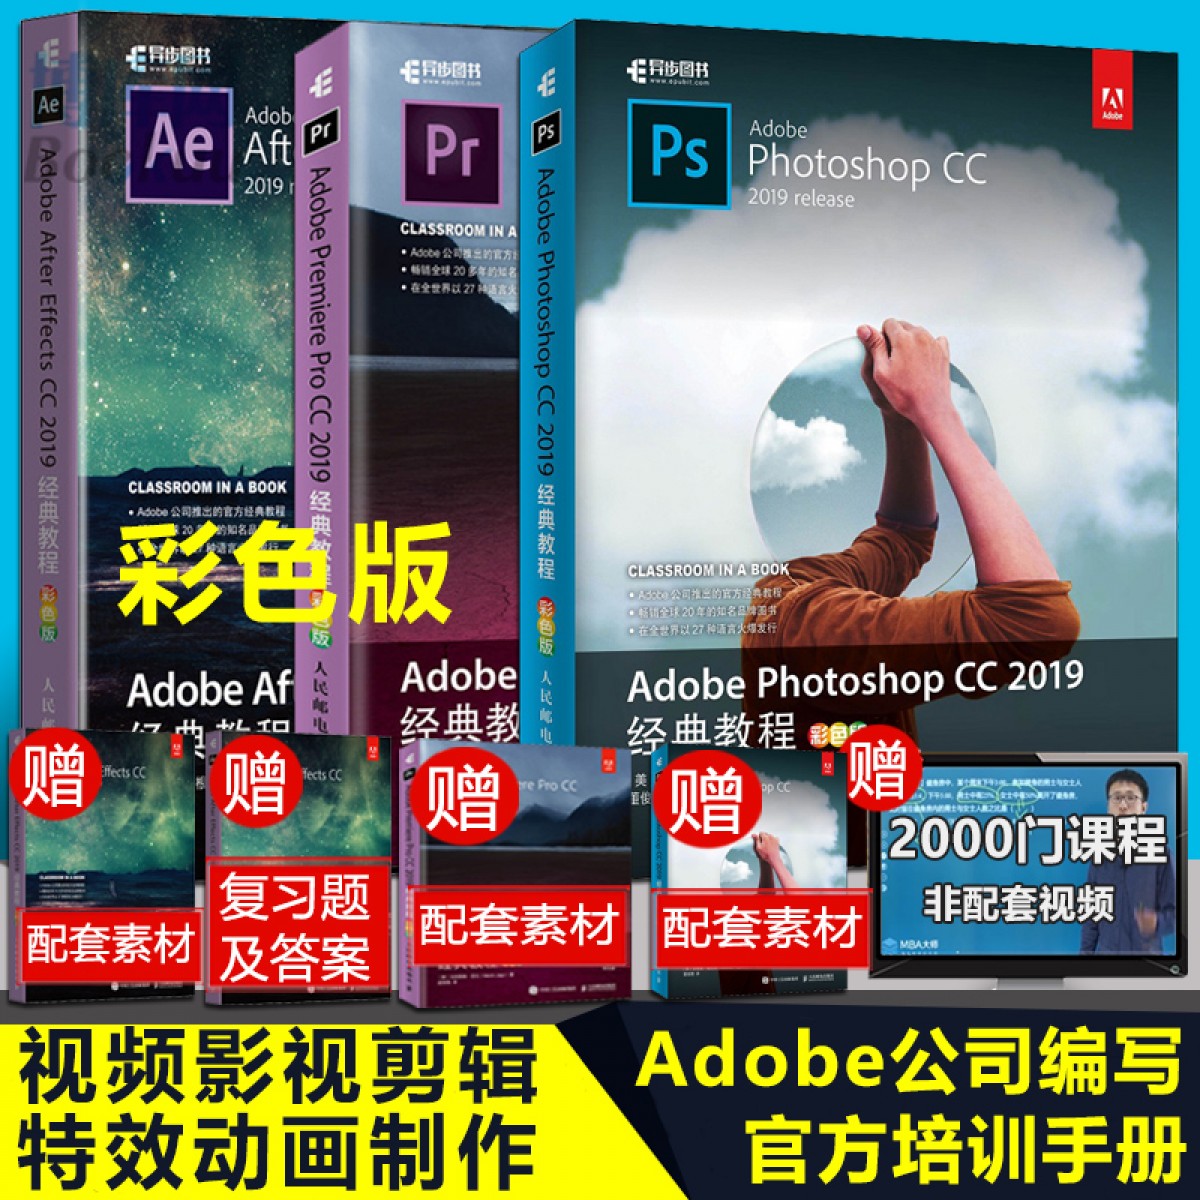 正版Adobe2019三册 After Effects CC+Photoshop CC+ Premiere Pro CC ps ae pr教程书籍 零基础 自学 影视后期 视频剪辑教程